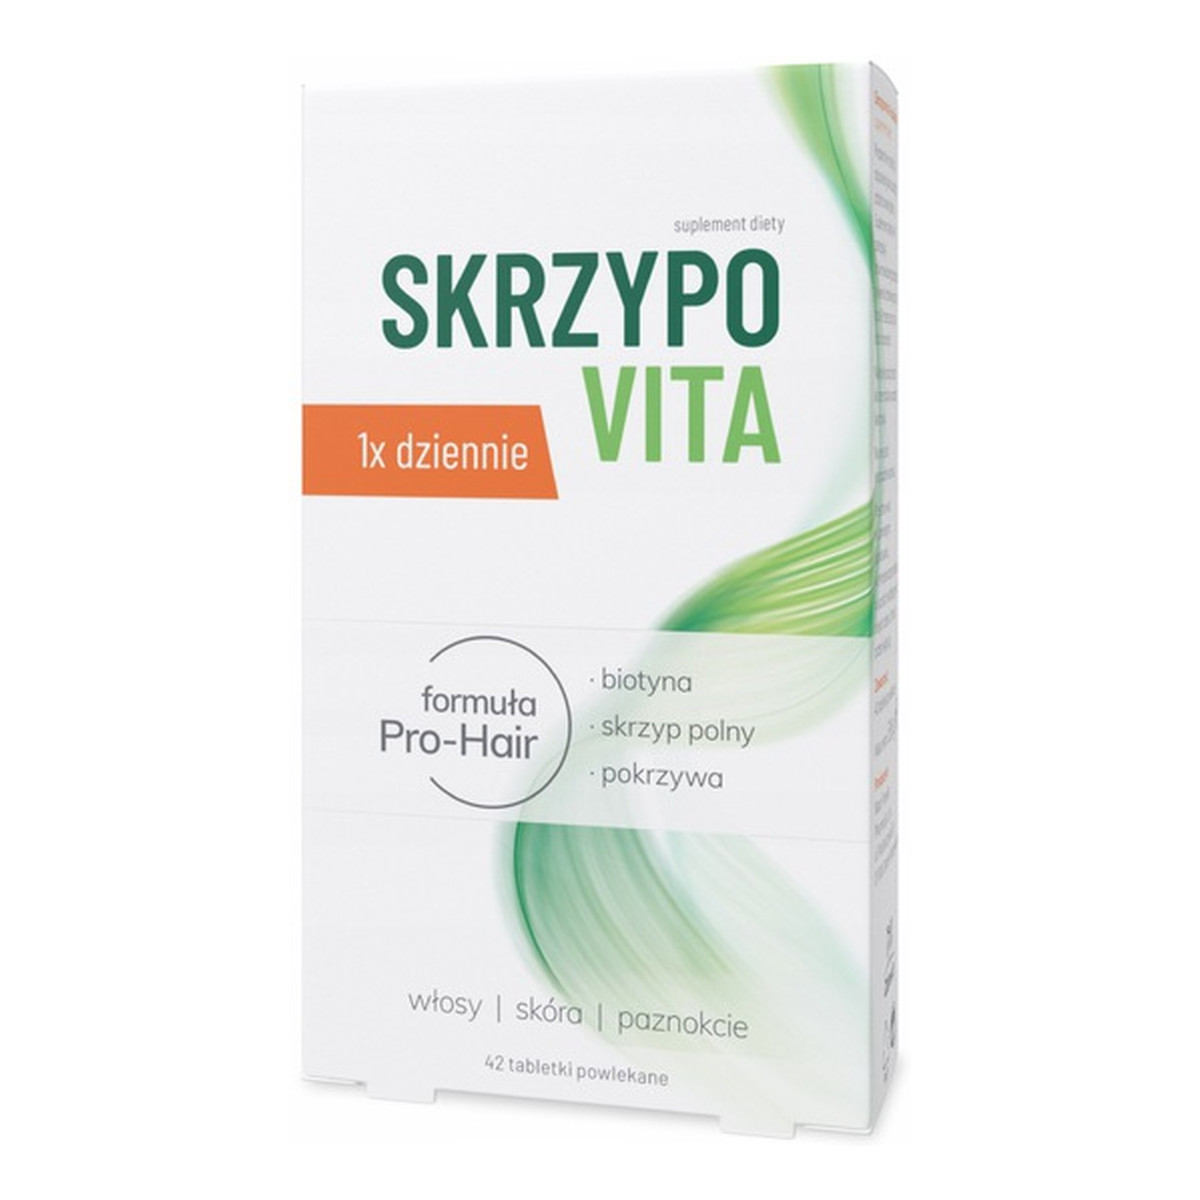 SkrzypoVita suplement diety 42 tabletki